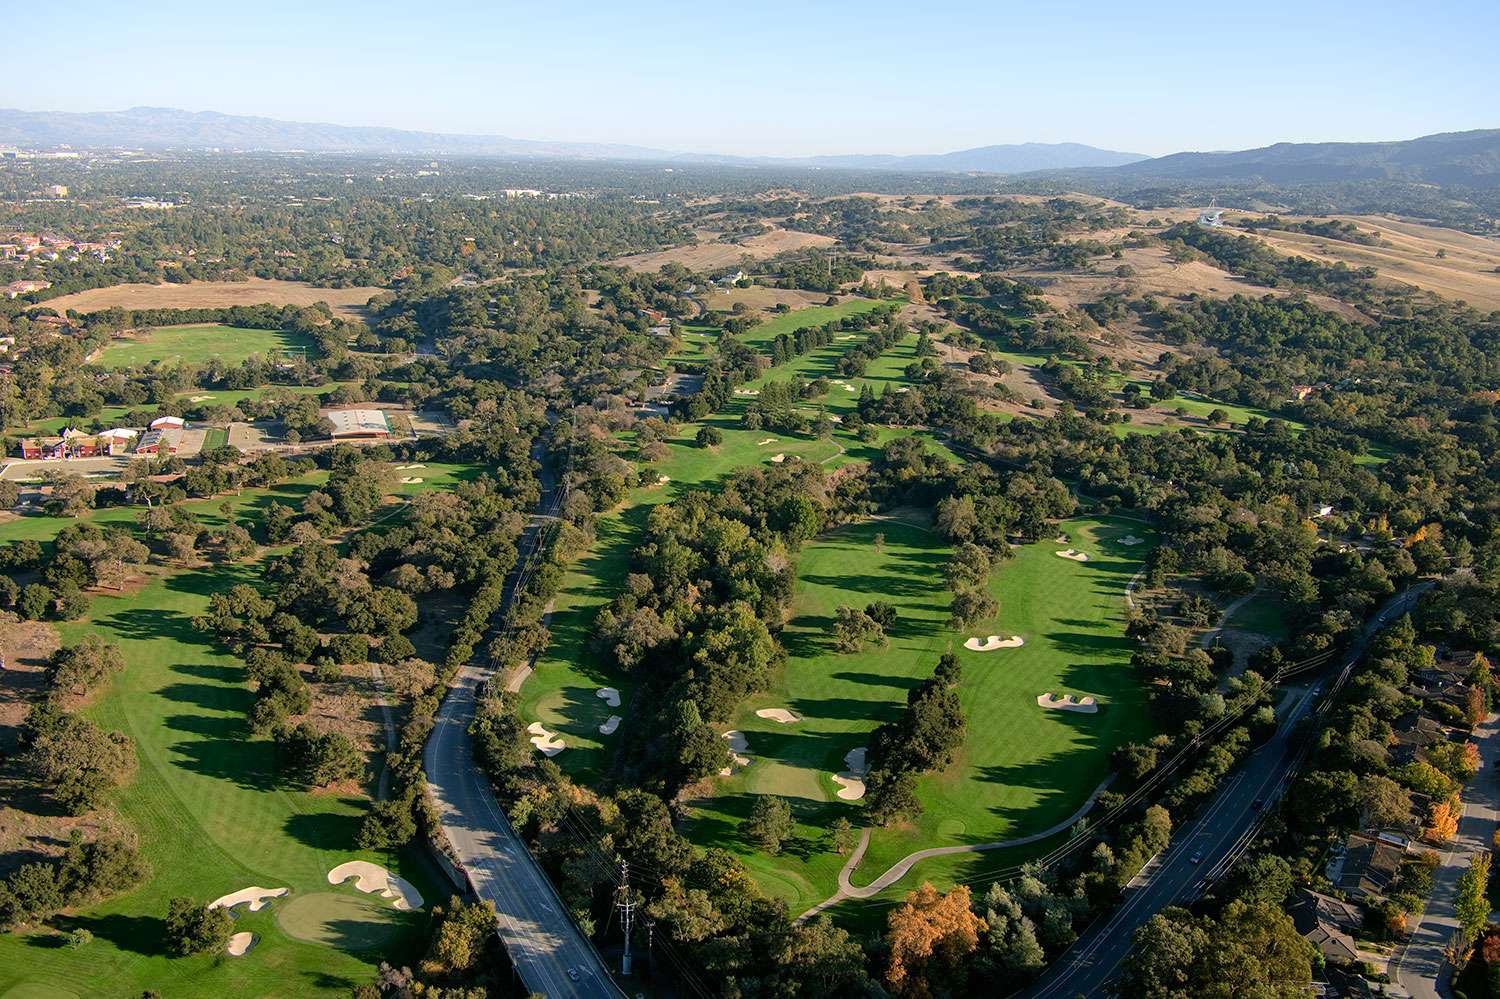 Stanford Men's Golf Team World Class Facilities